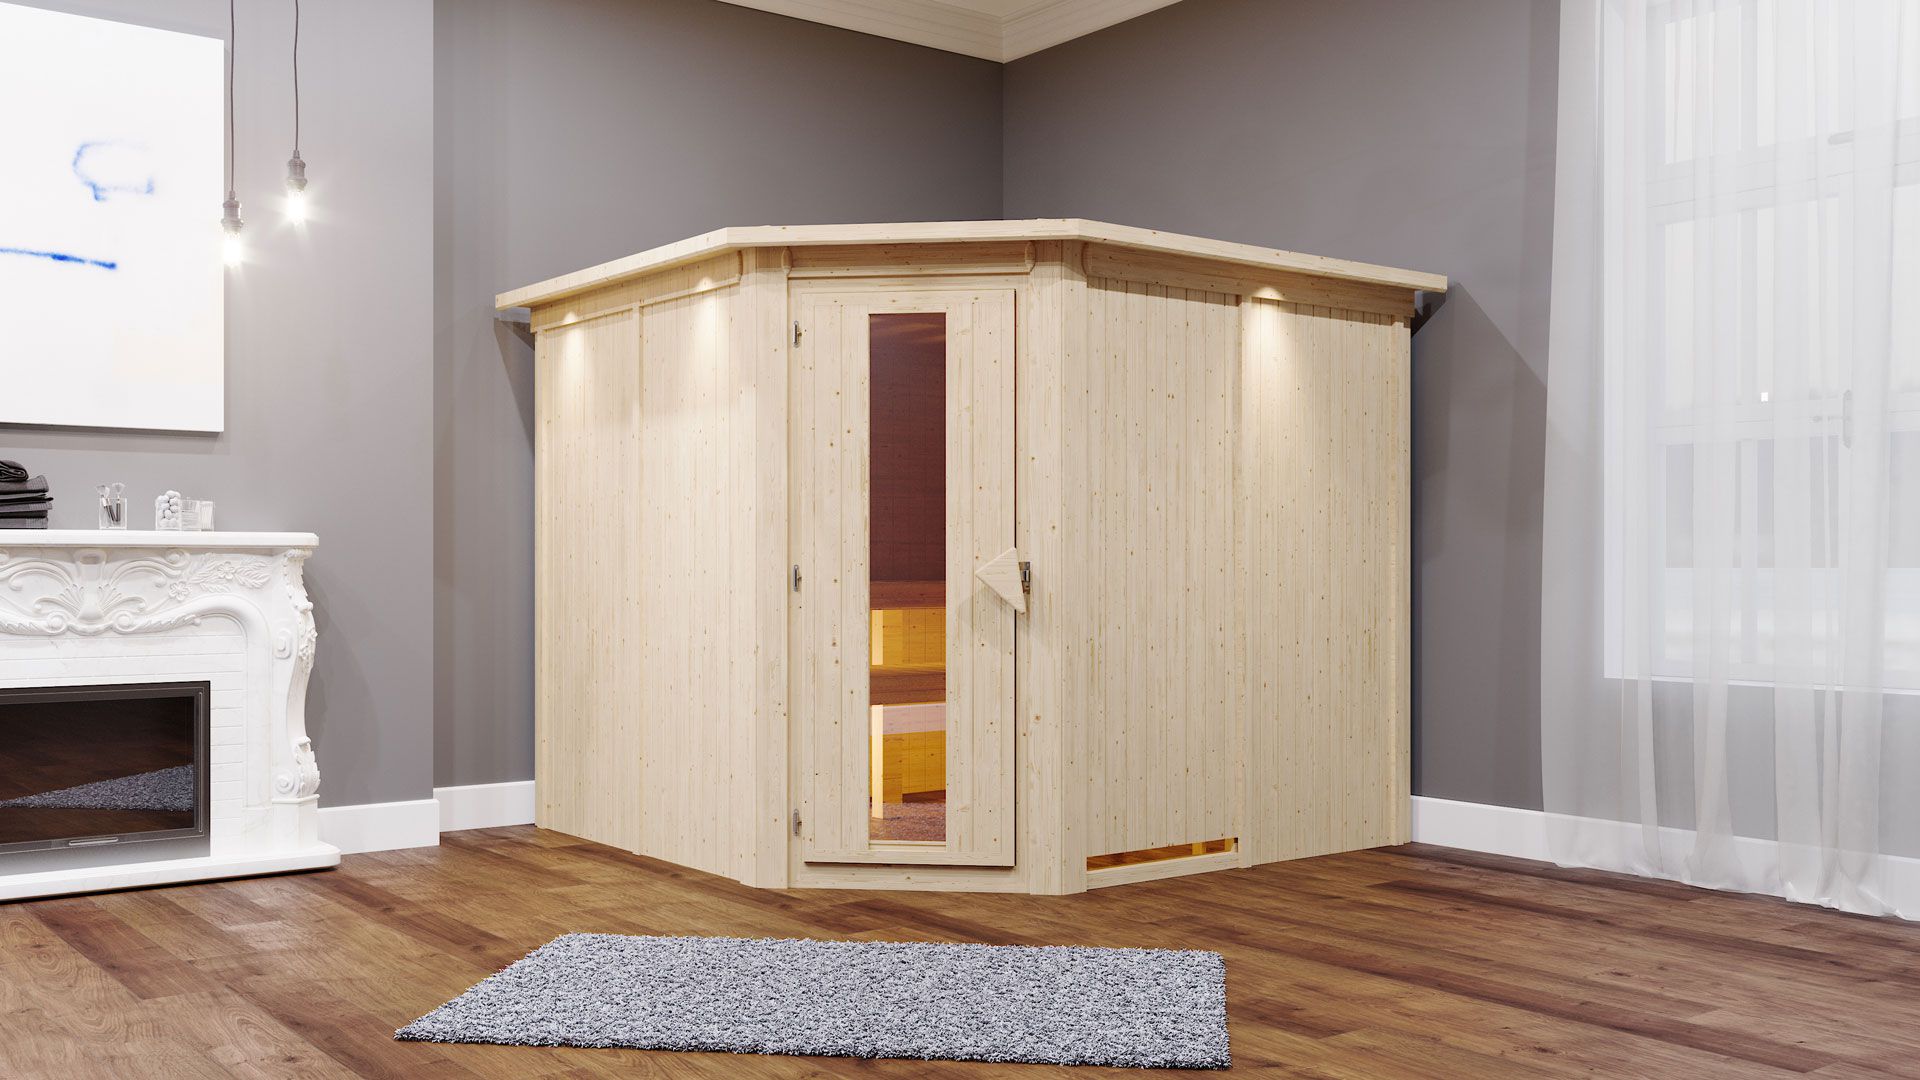 Sauna "Samu" mit Energiespartür und Kranz - Farbe: Natur - 245 x 210 x 202 cm (B x T x H)